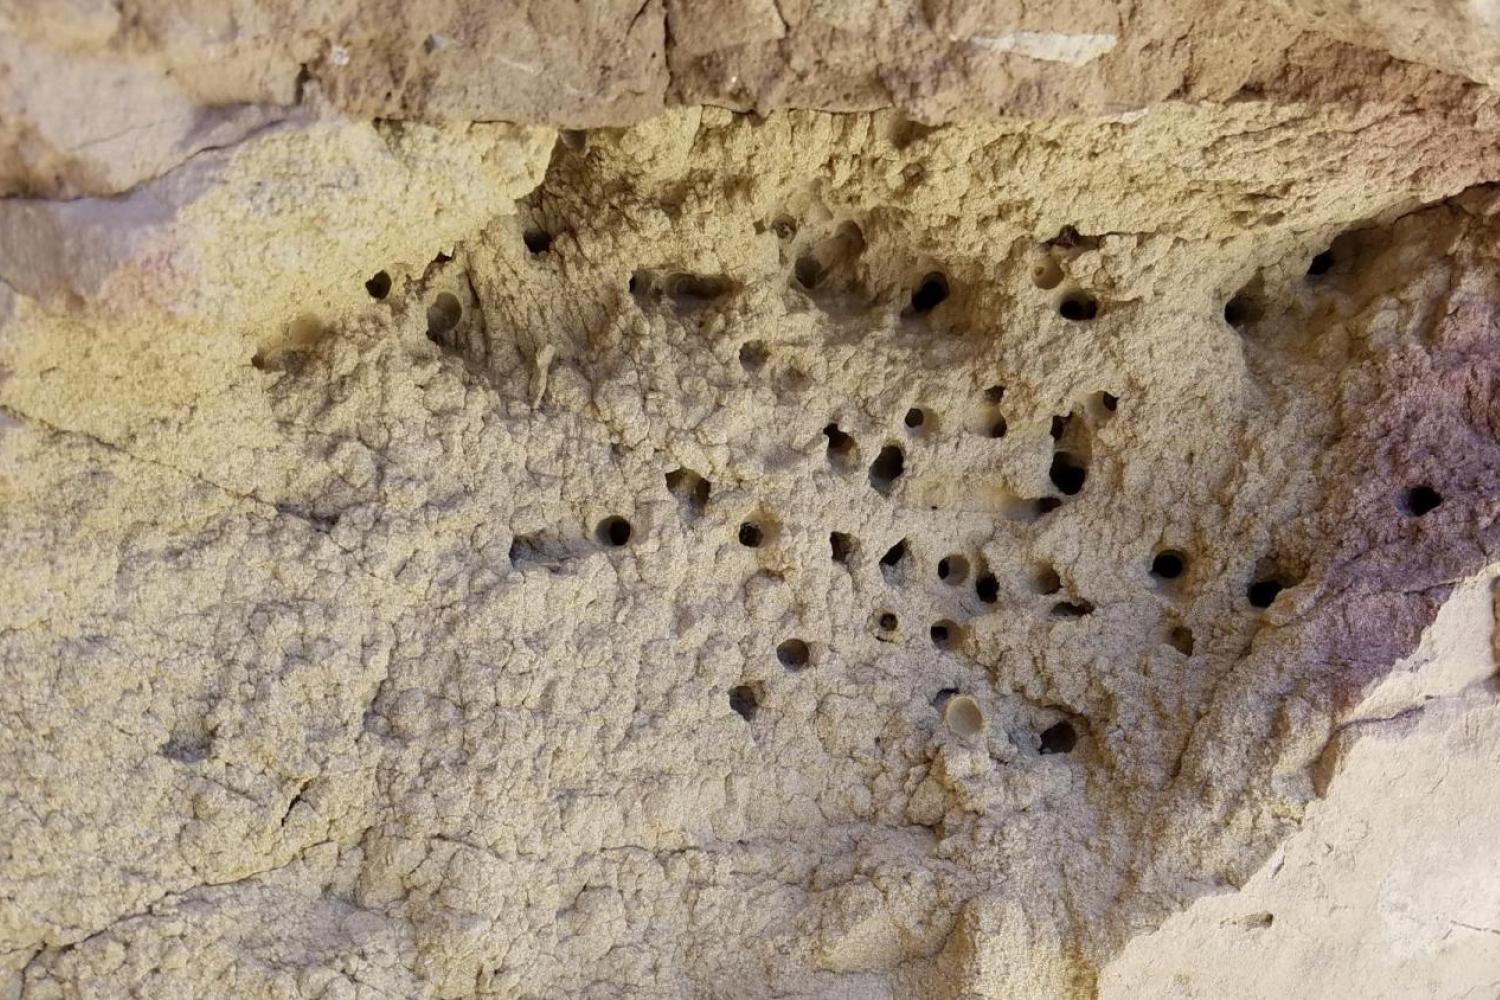 Anthophora pueblo nest in a wall